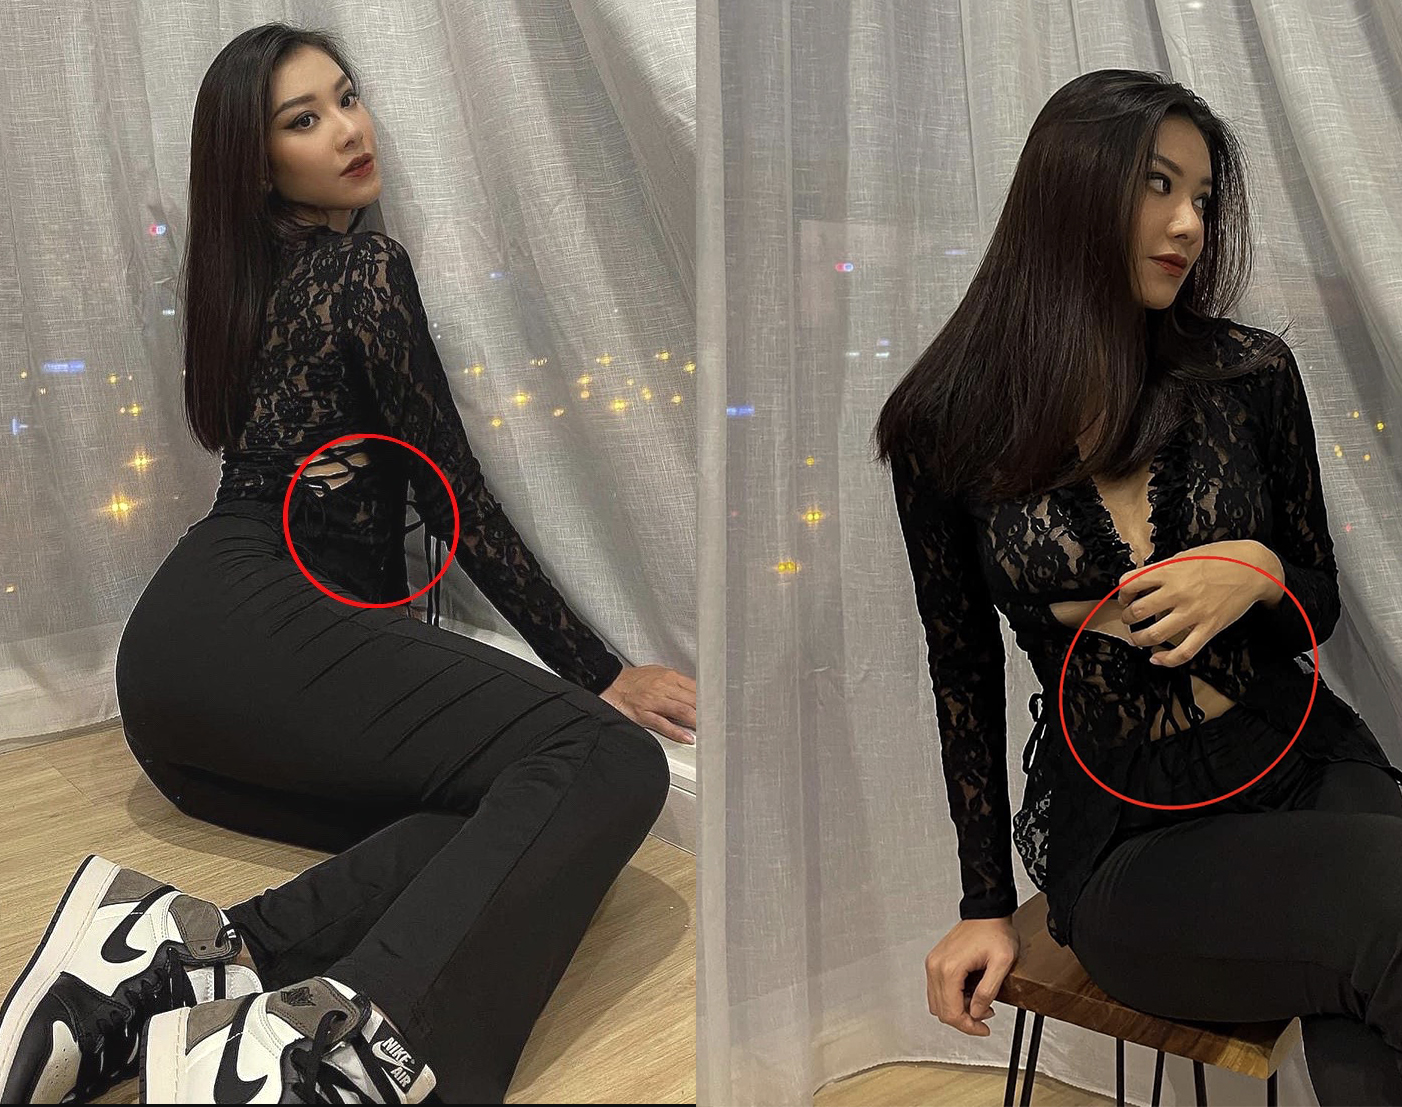 Dù là mặc đồ đen, cố dùng tay che eo nhưng ở một số góc vẫn thấy vòng 2 'phát phì' của cô nàng.